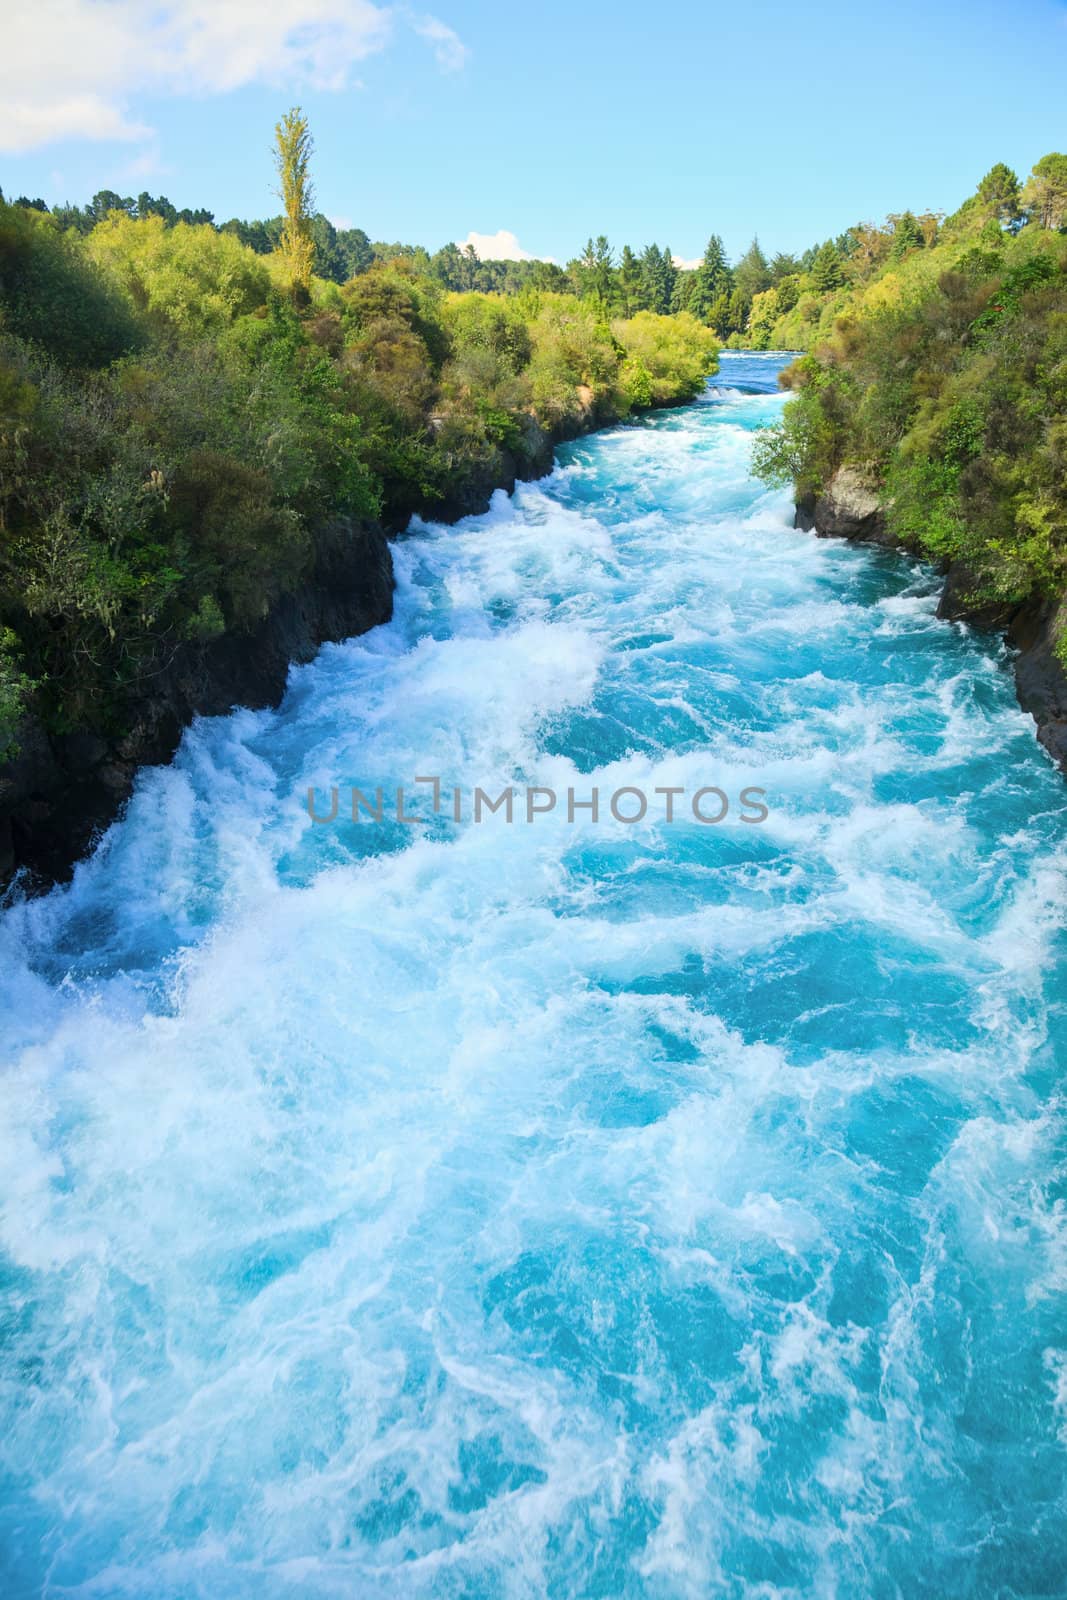 Narrow canyon of Huka falls on the Waikato River, New Zealand